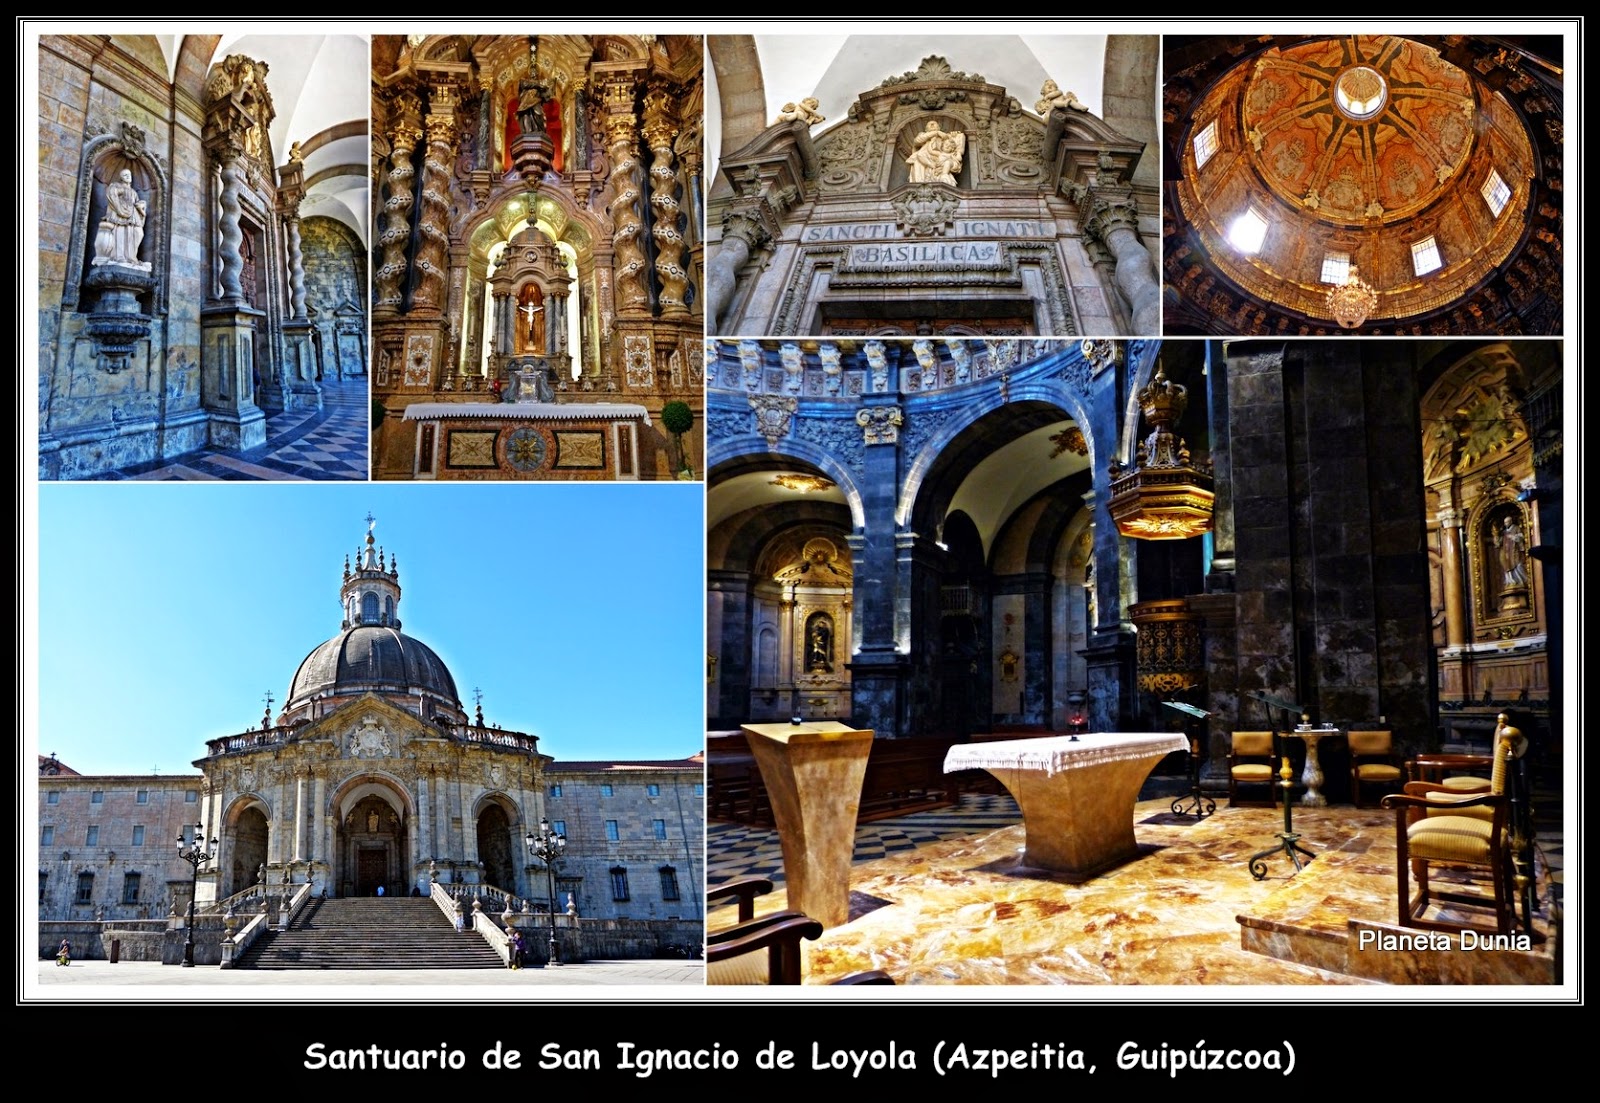 Santuario de San Ignacio de Loyola